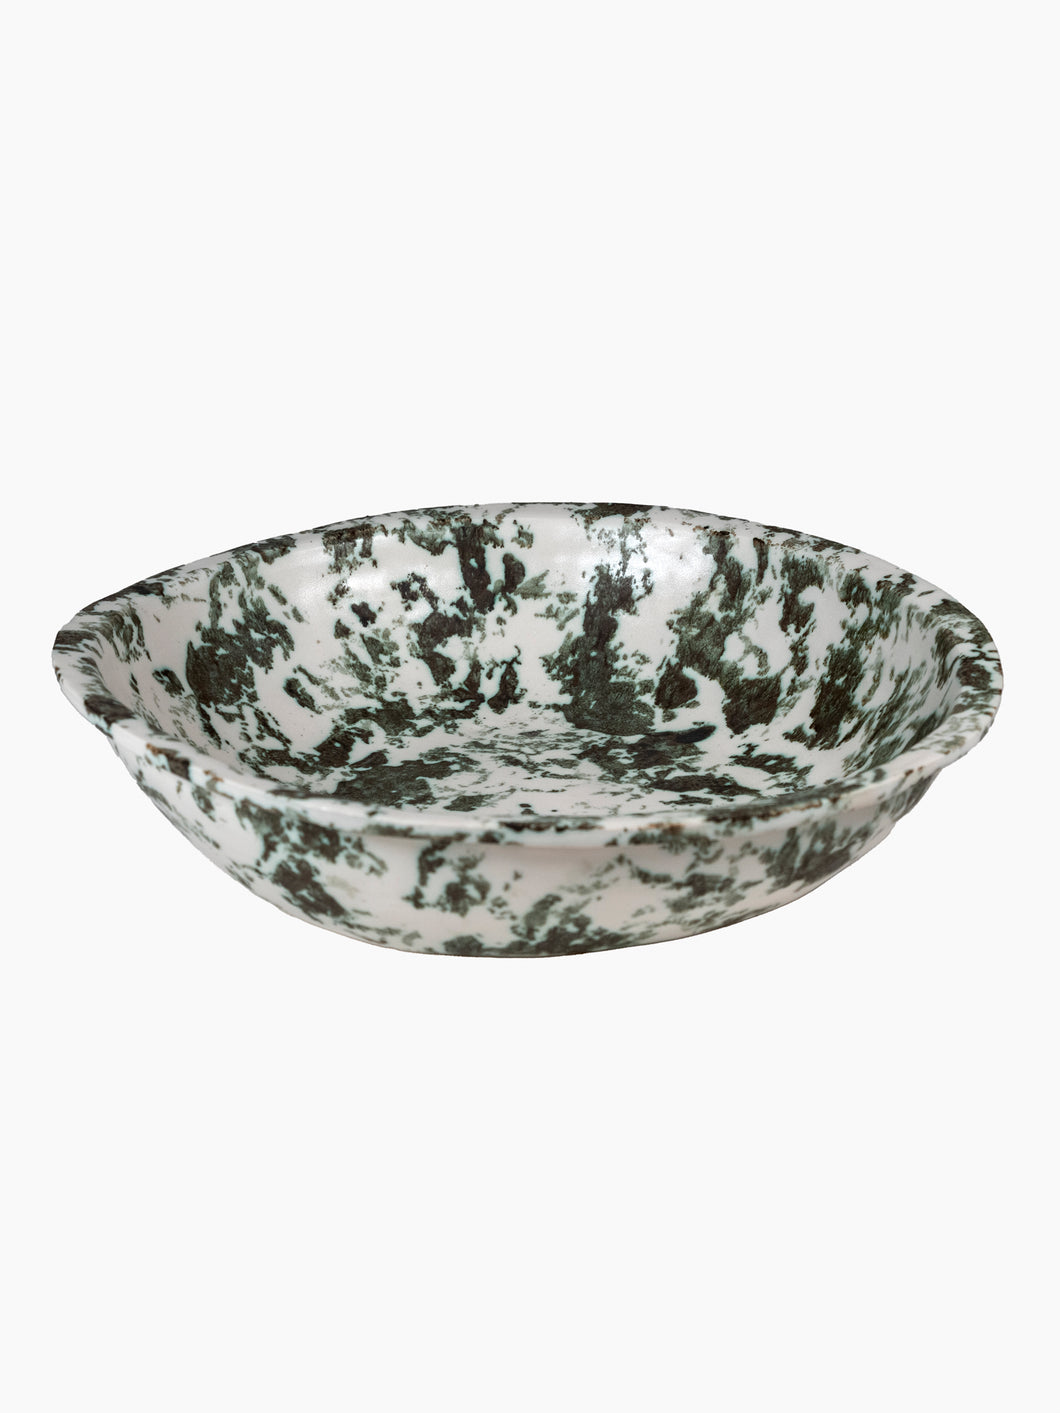 ANK Ceramics Lichen Bowl